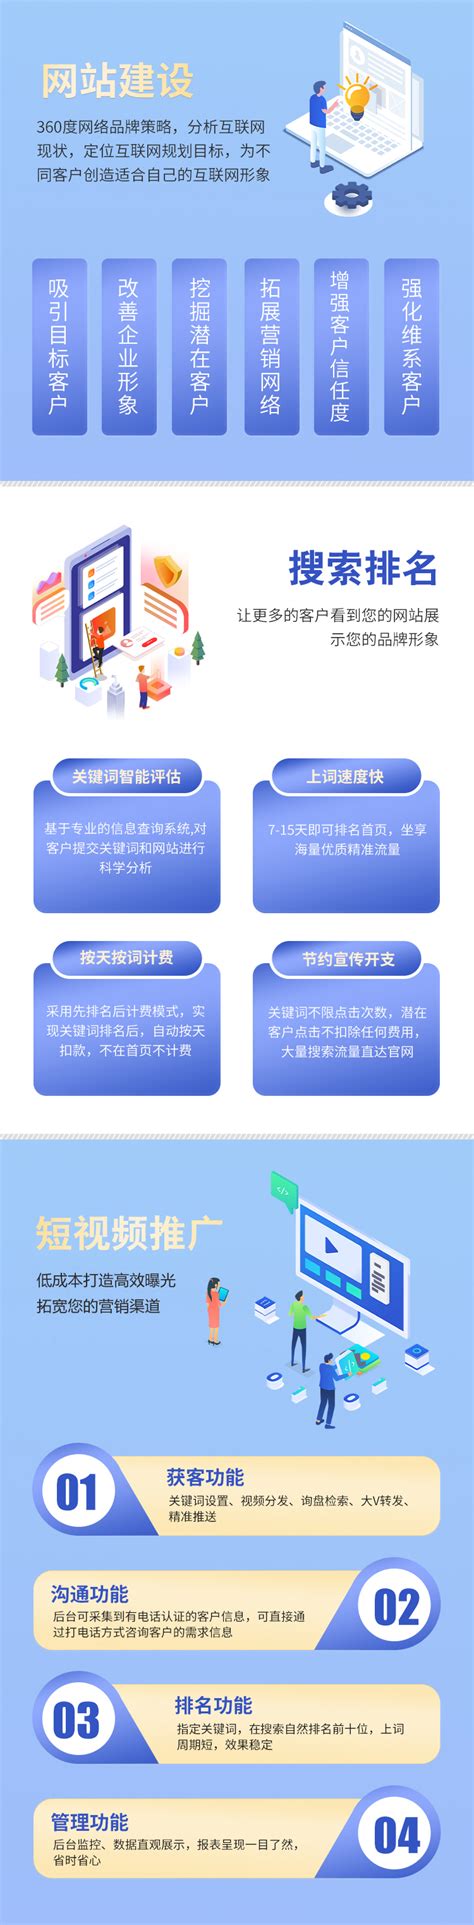 贵州网络推广实用教程